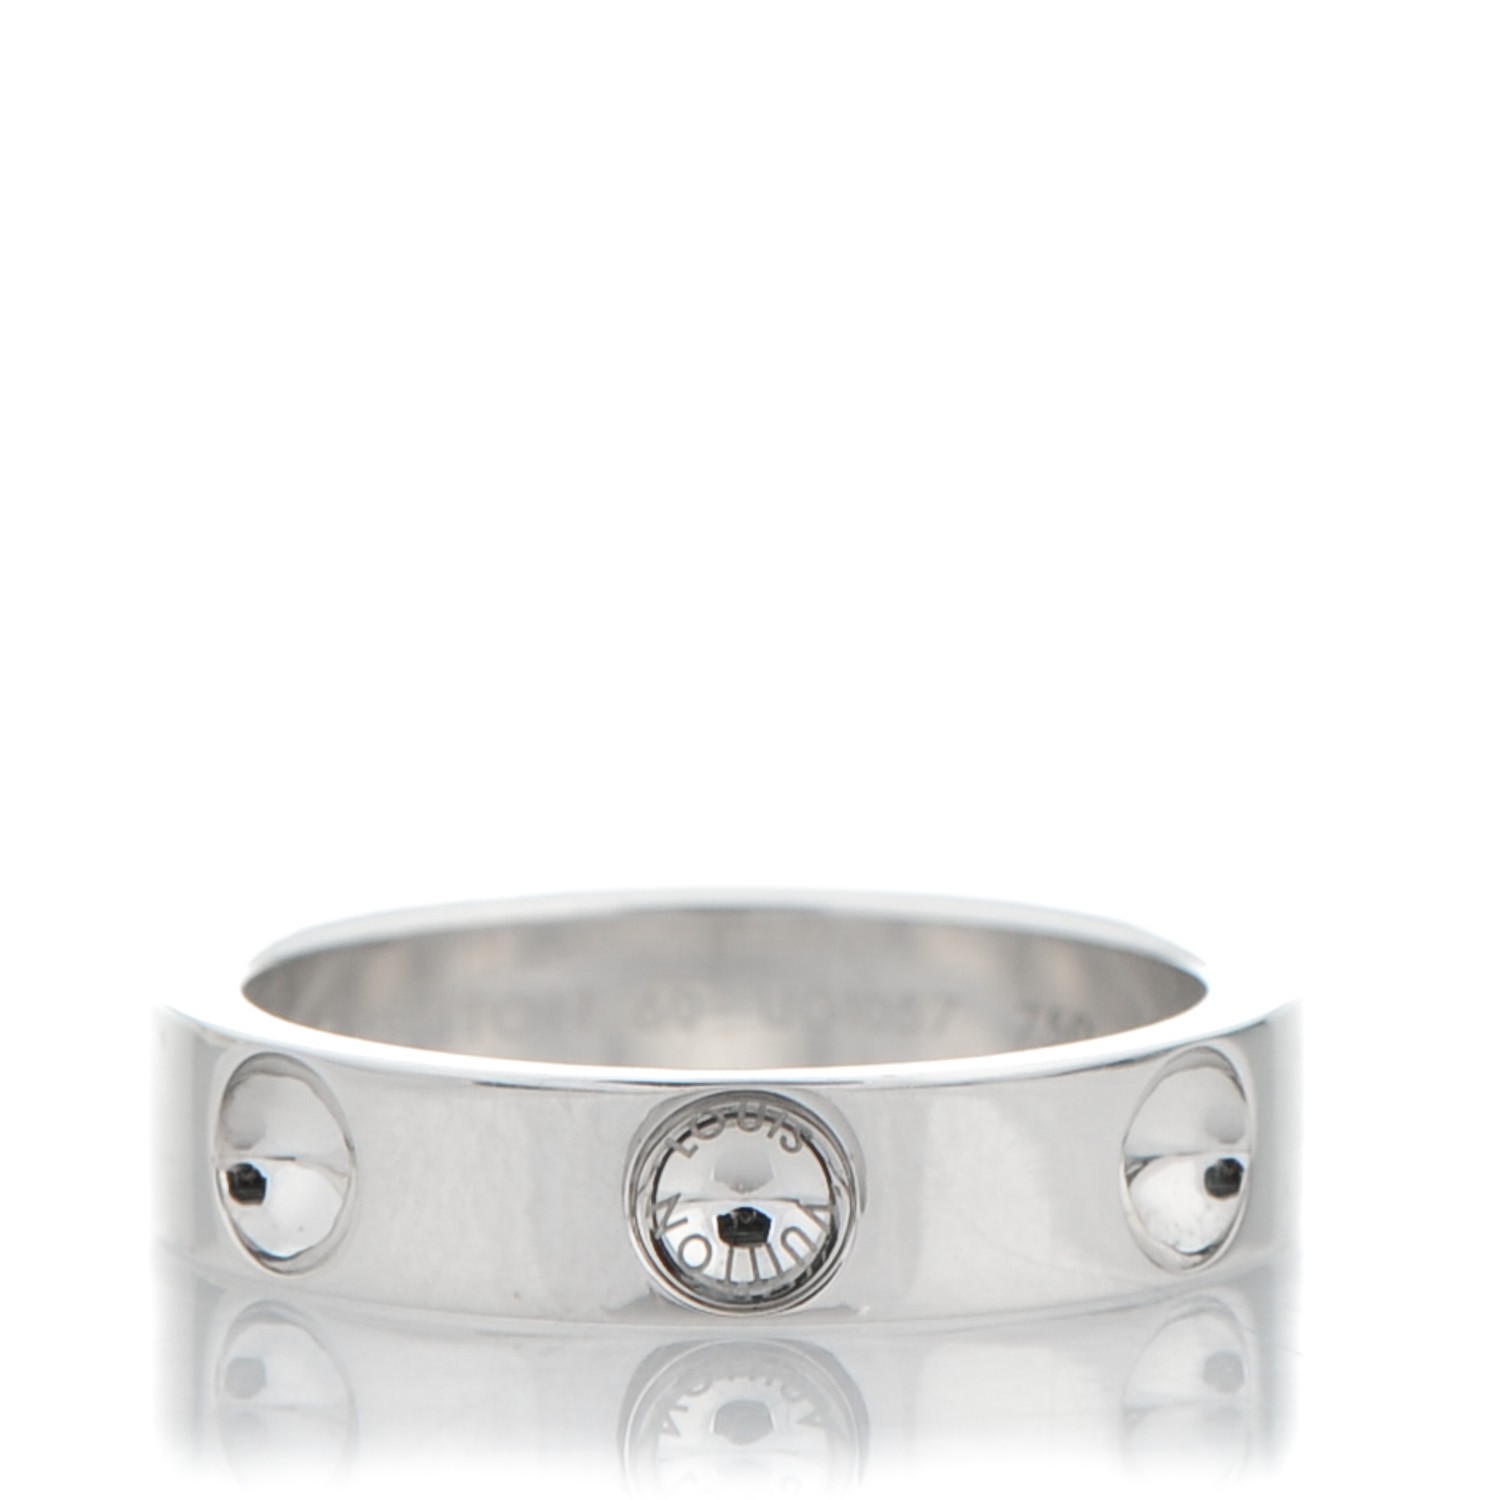 Louis Vuitton Empreinte Ring, White Gold and Diamonds Grey. Size 47